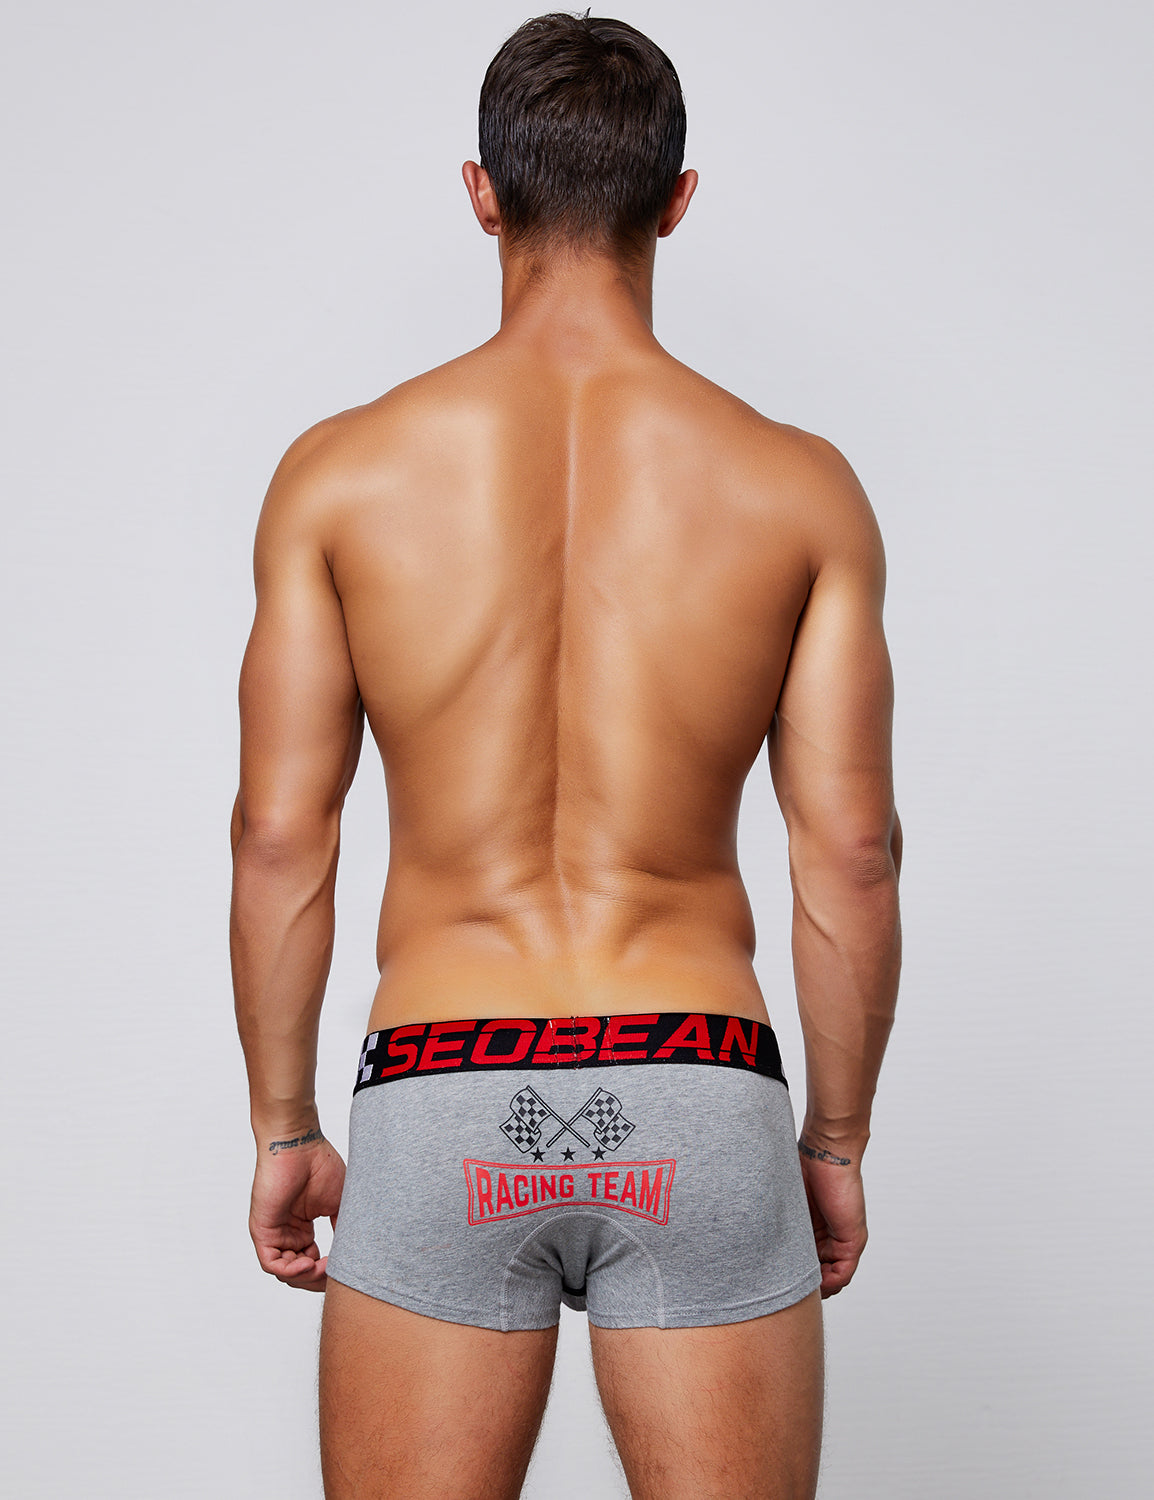 SEOBEAN Mens Sexy Low Rise Boxer Brief Racing Team Badge Underwear 90220  – SEOBEAN®